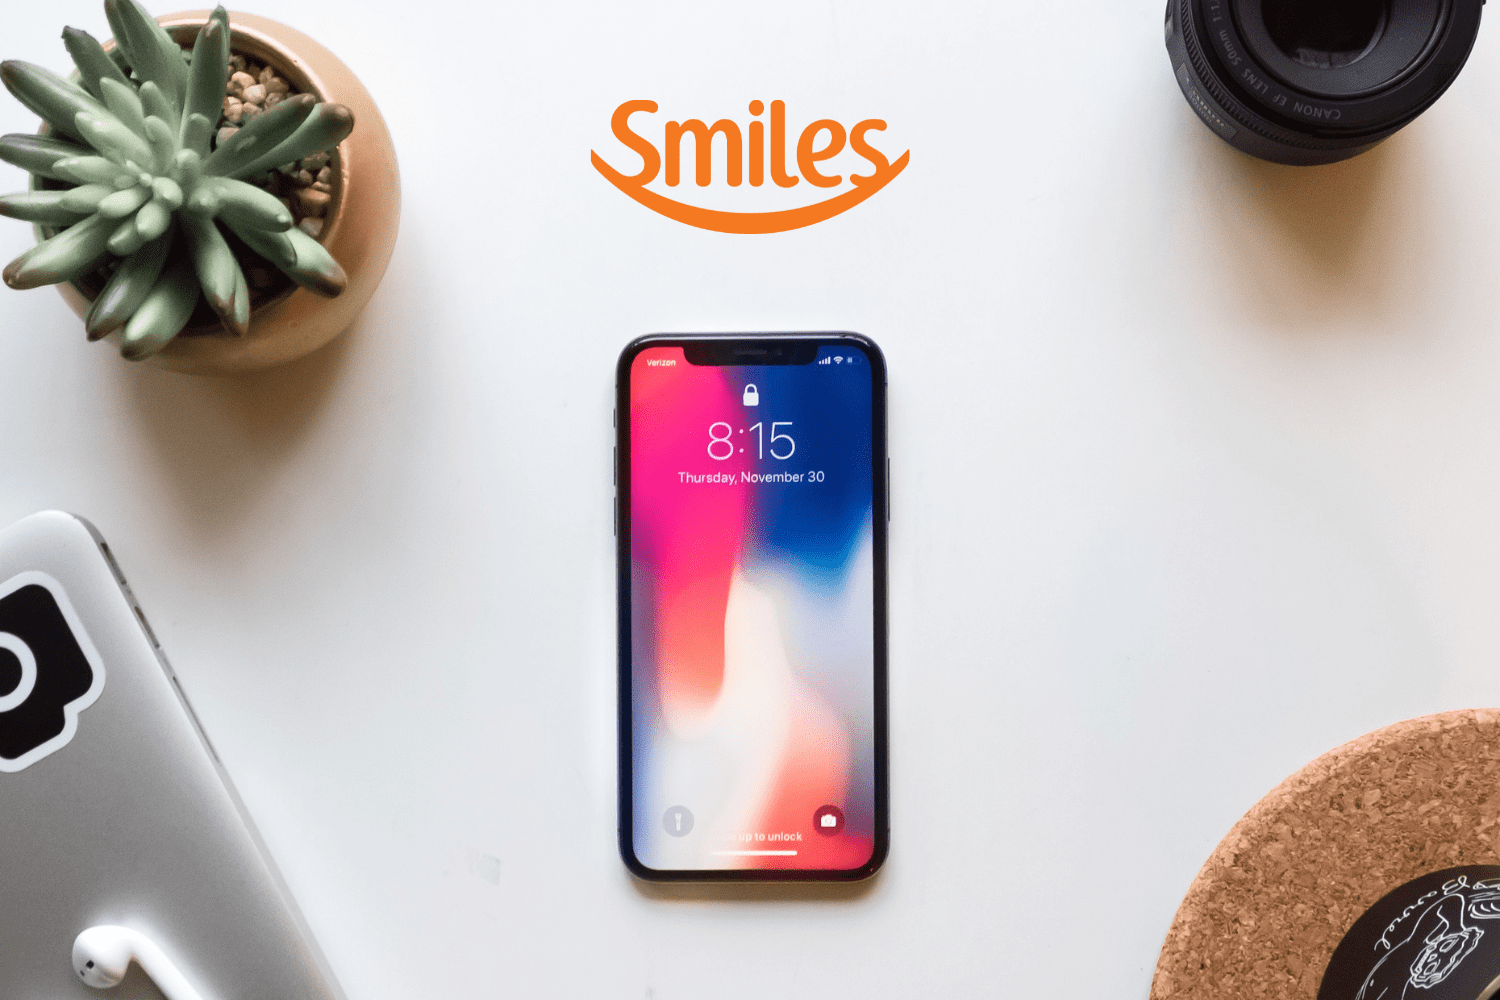 Iphone na mesa com logo Smiles pontos Smiles